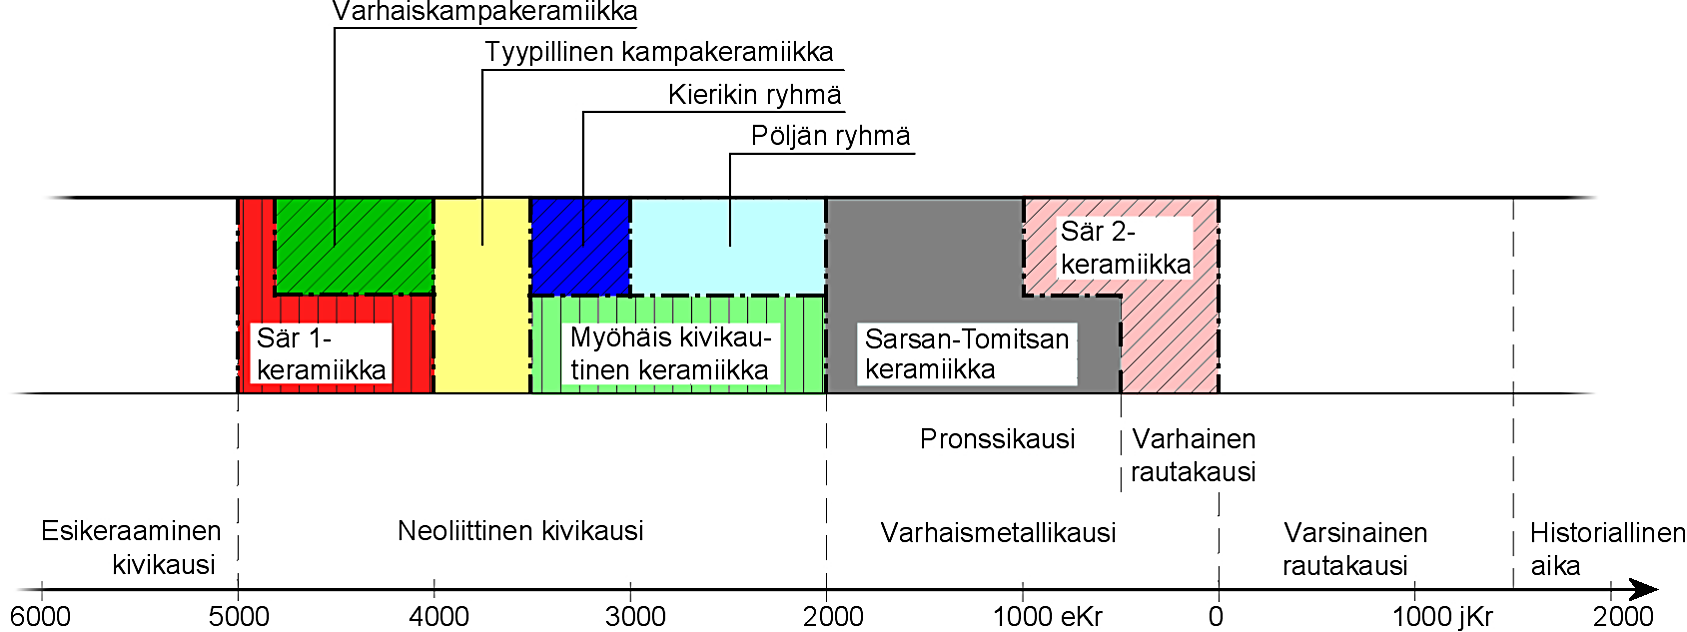 Kalaisa Oulujoki houkutteli asutusta jo kivikauden aikana. Myöhemminkin se on tarjonnut leipää alueen ihmisille monella eri tavalla.